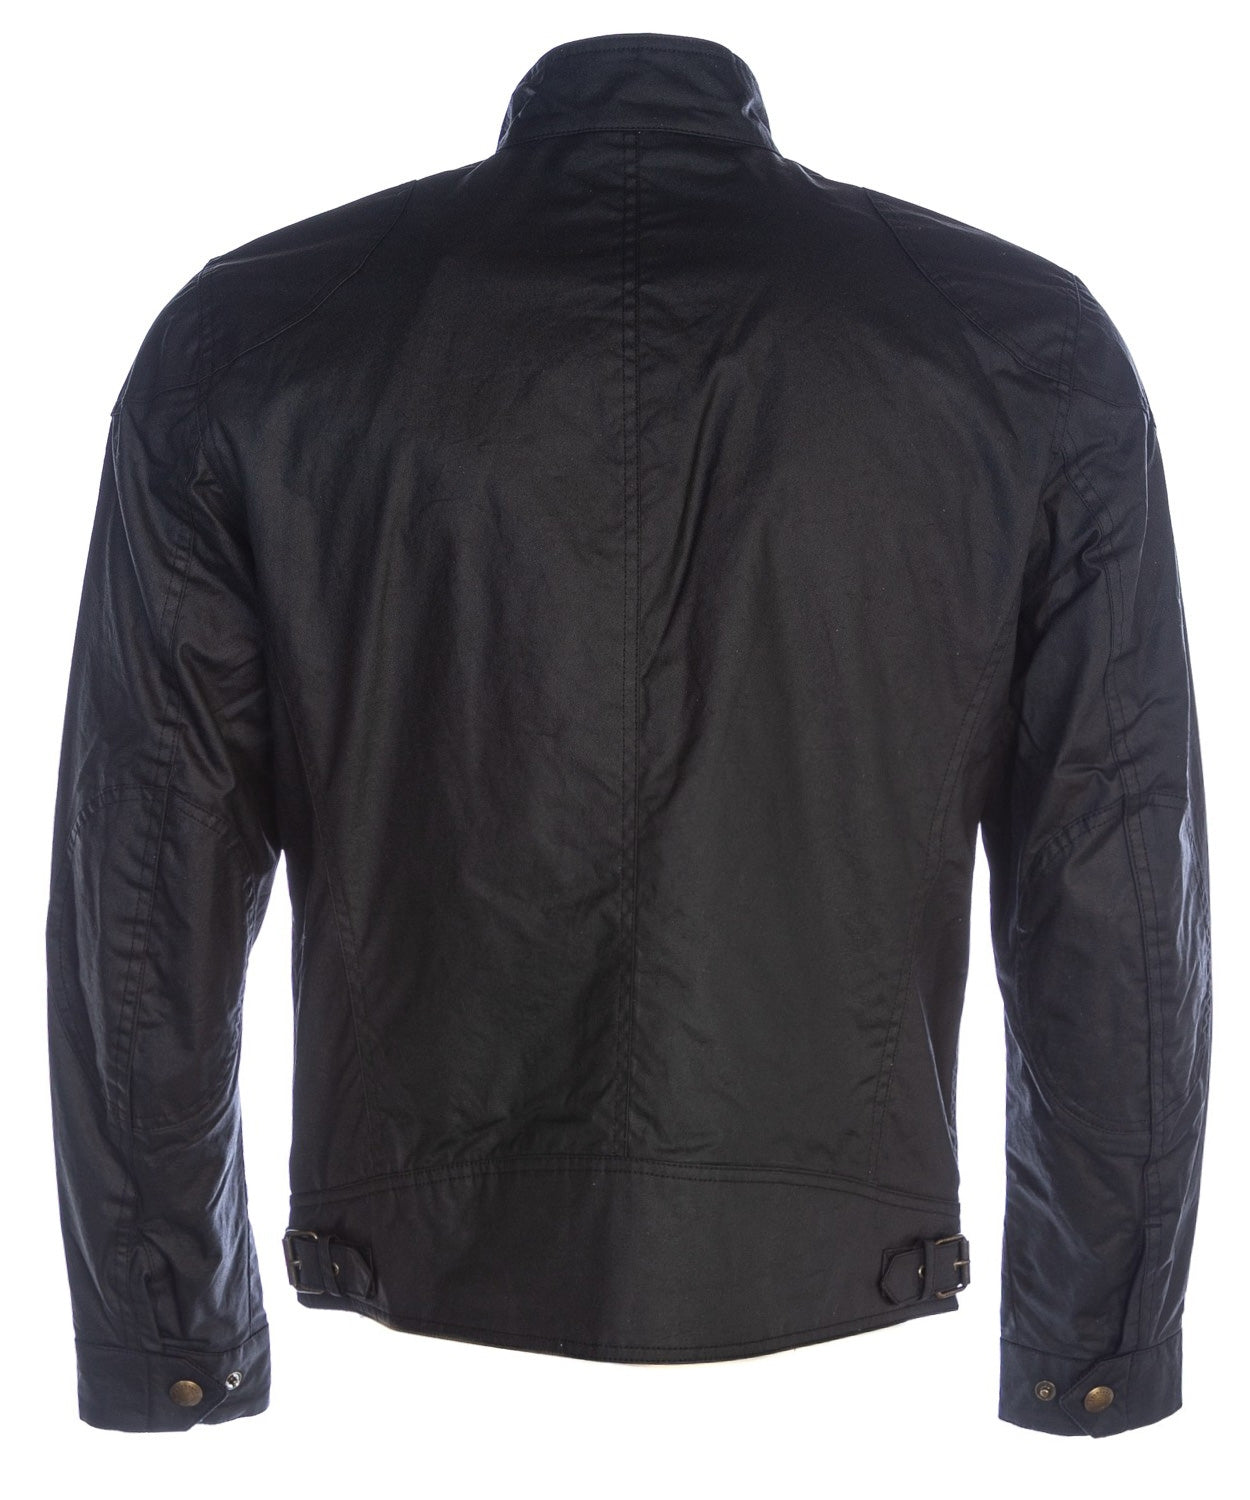 Belstaff Racemaster Jacket in Black